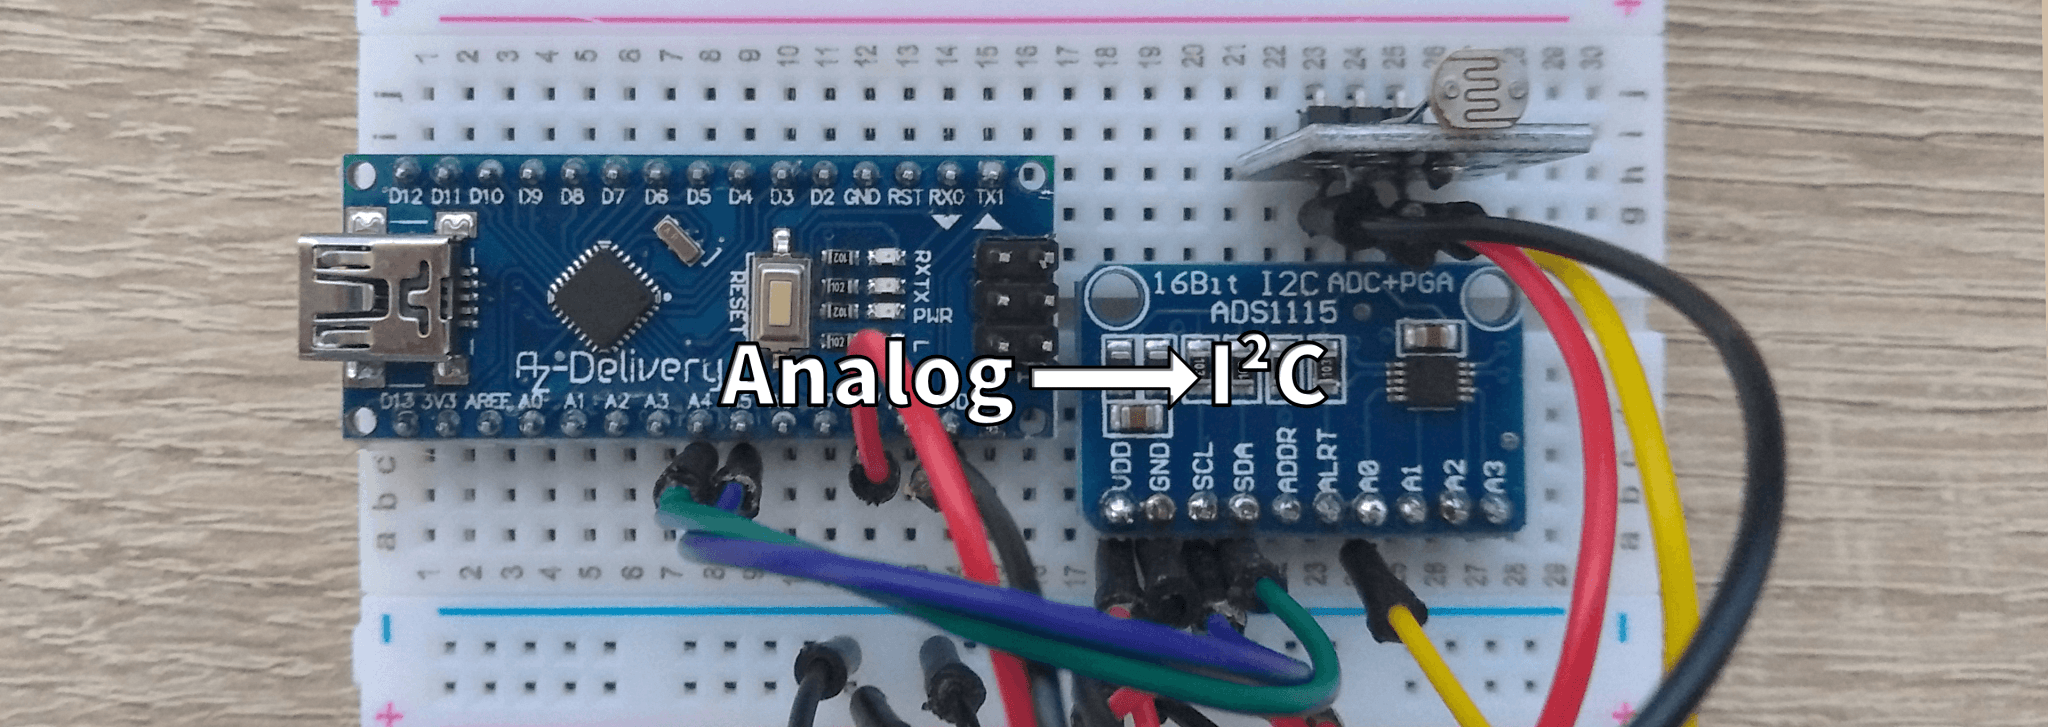 I2C für analoge Sensoren mit dem ADS1115 - AZ-Delivery